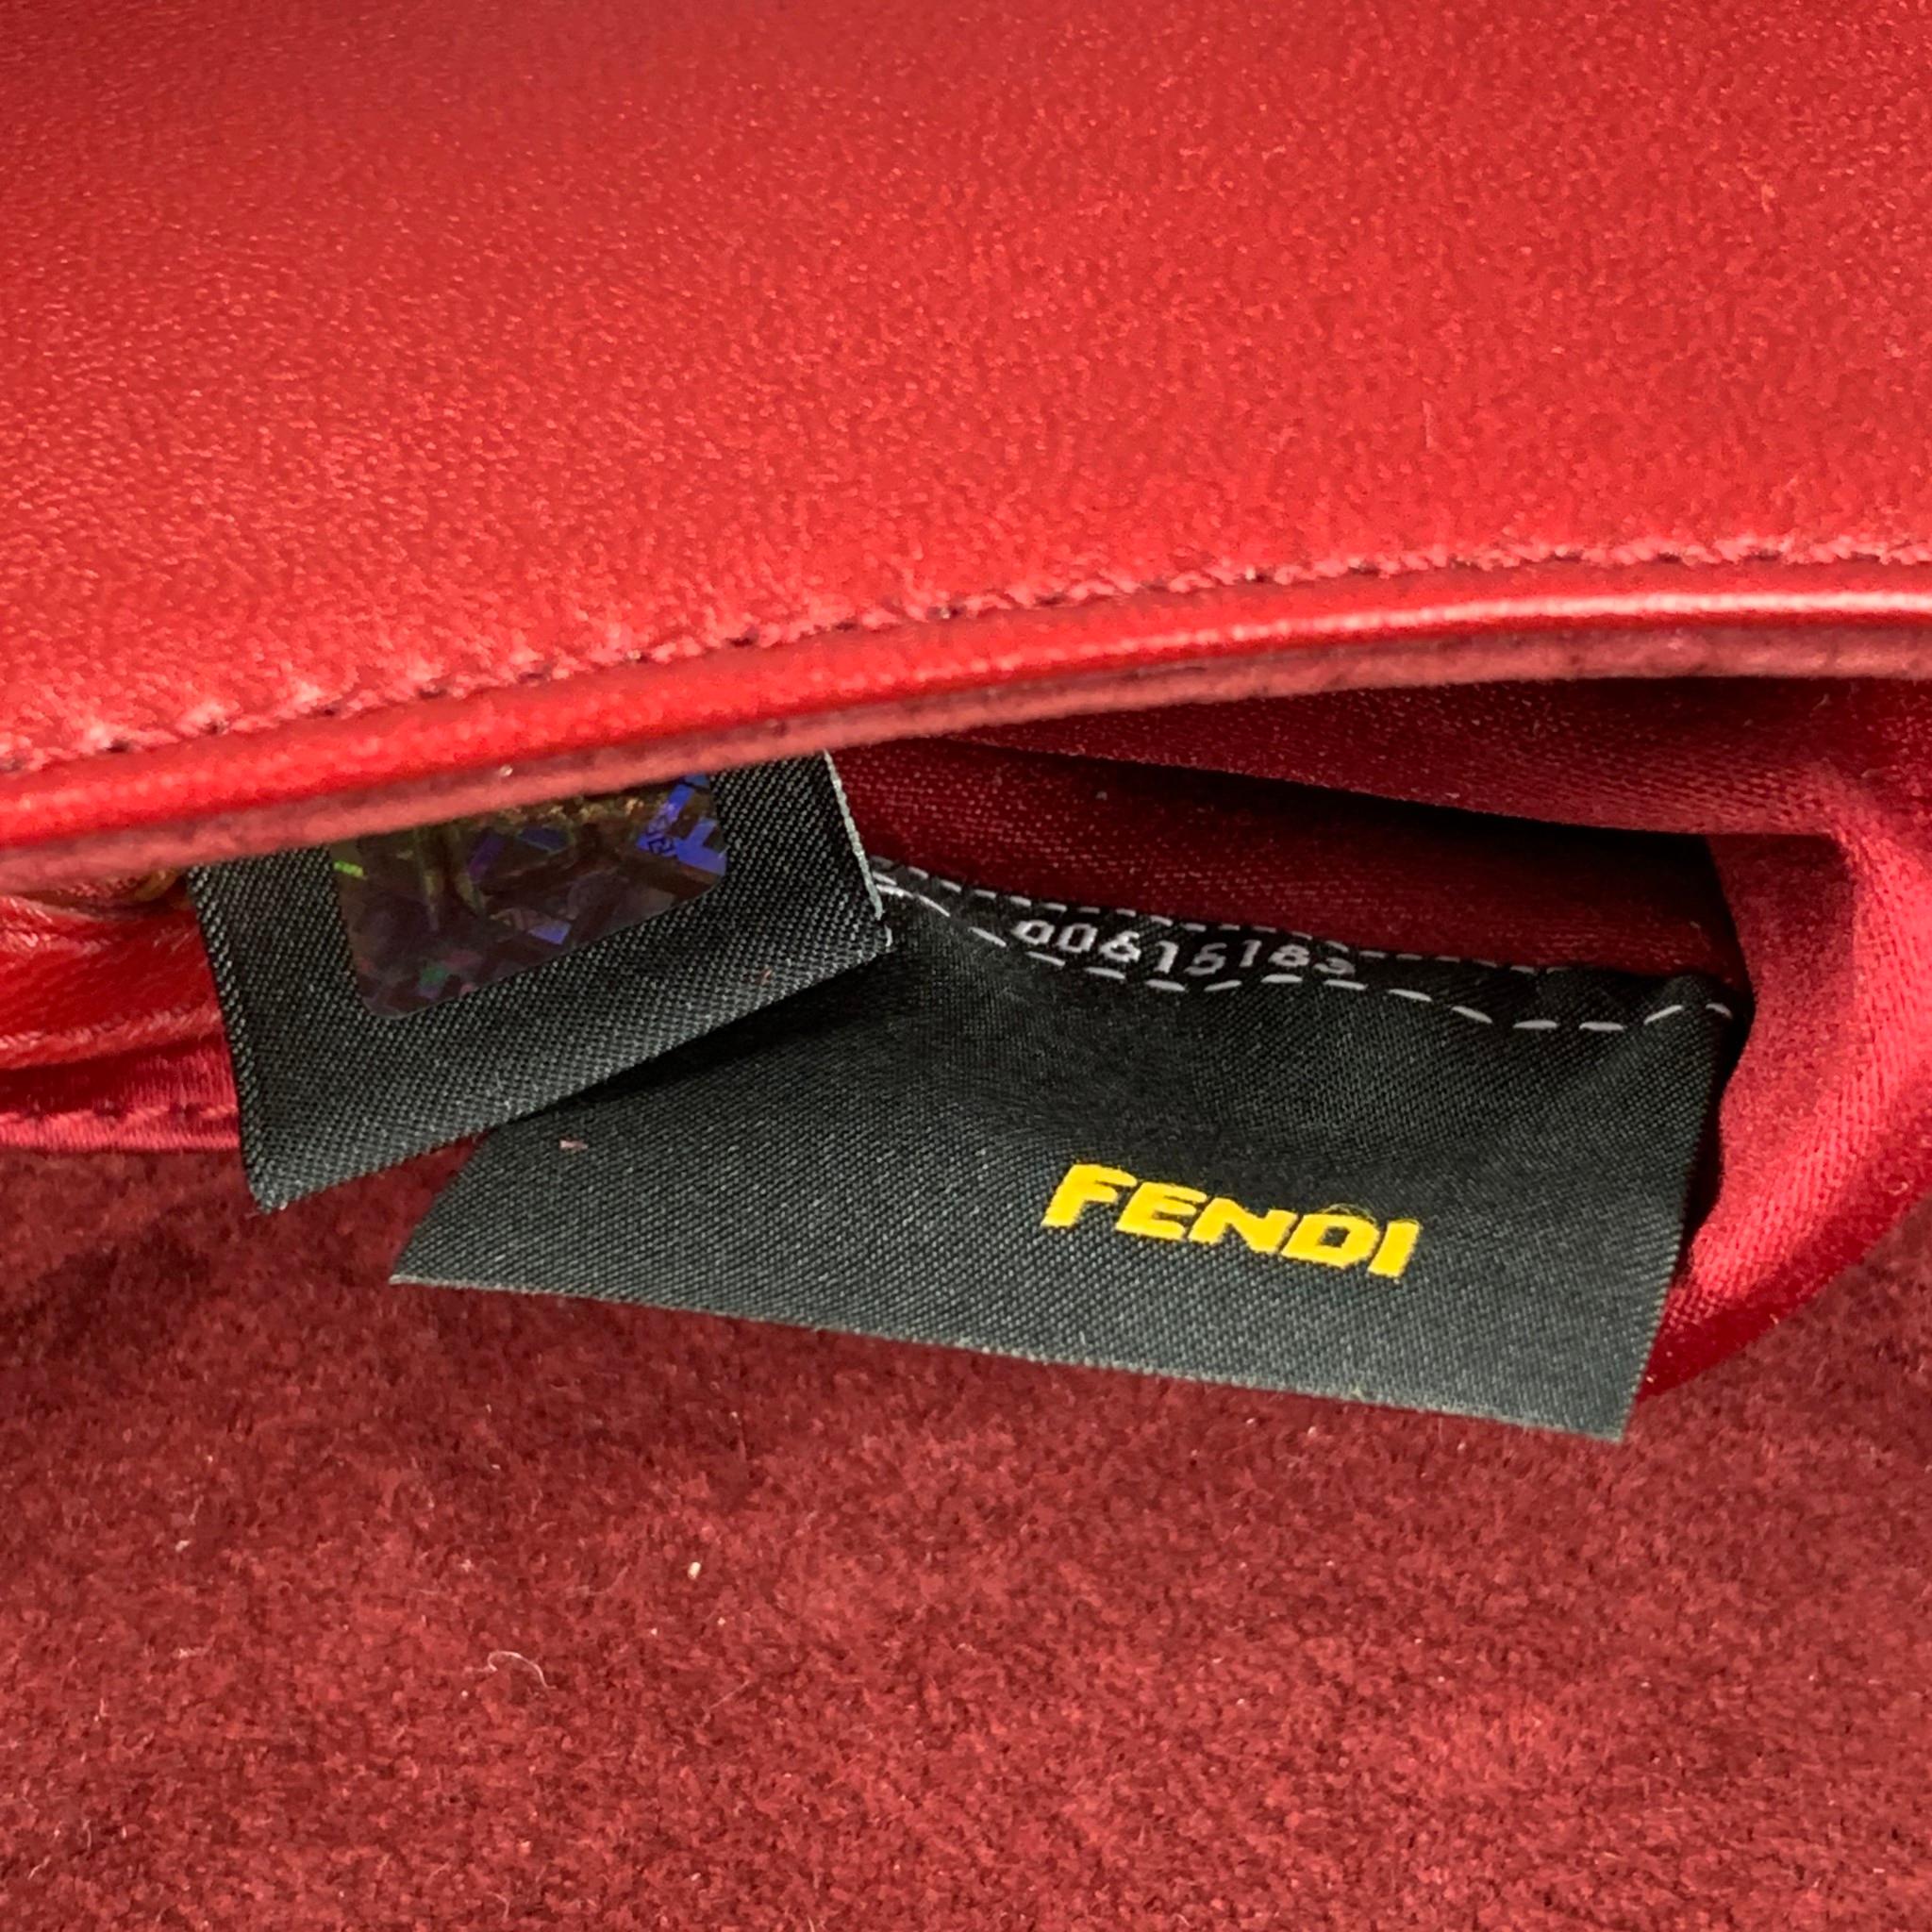 FENDI Red Floral Leather Baguette Shoulder Handbag 4